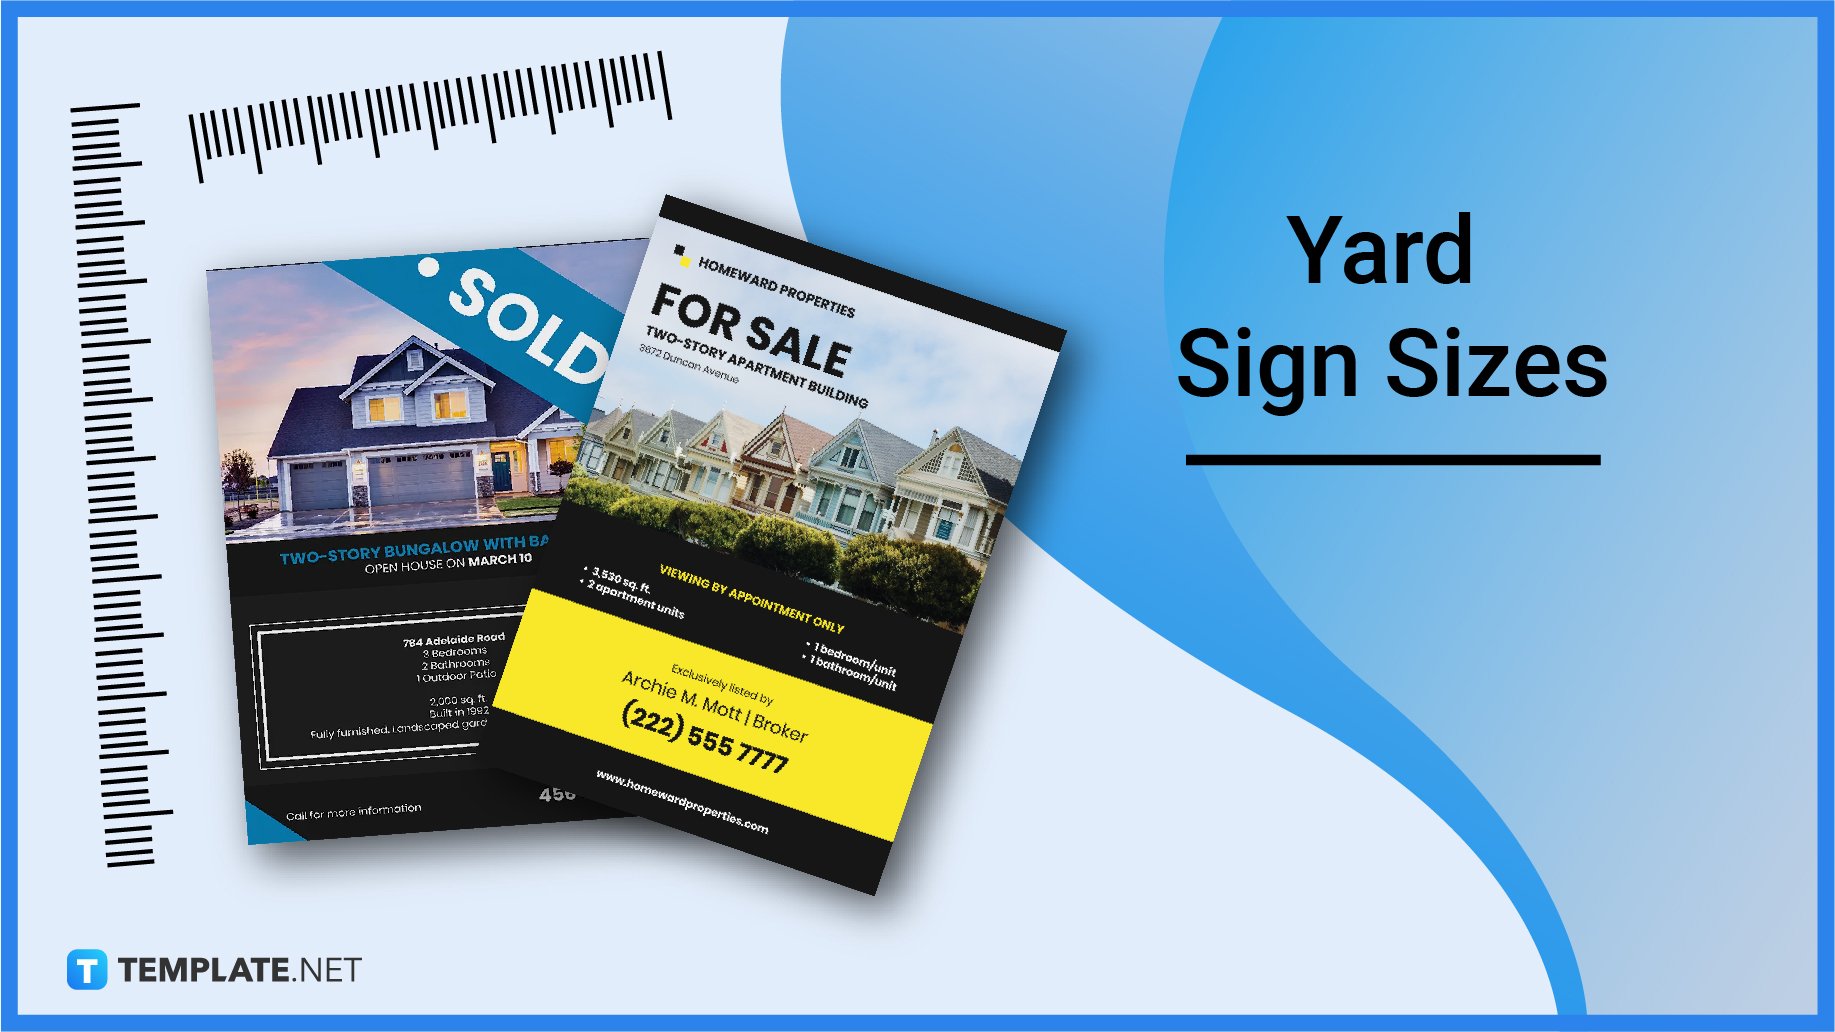 yard-sign-sizes1